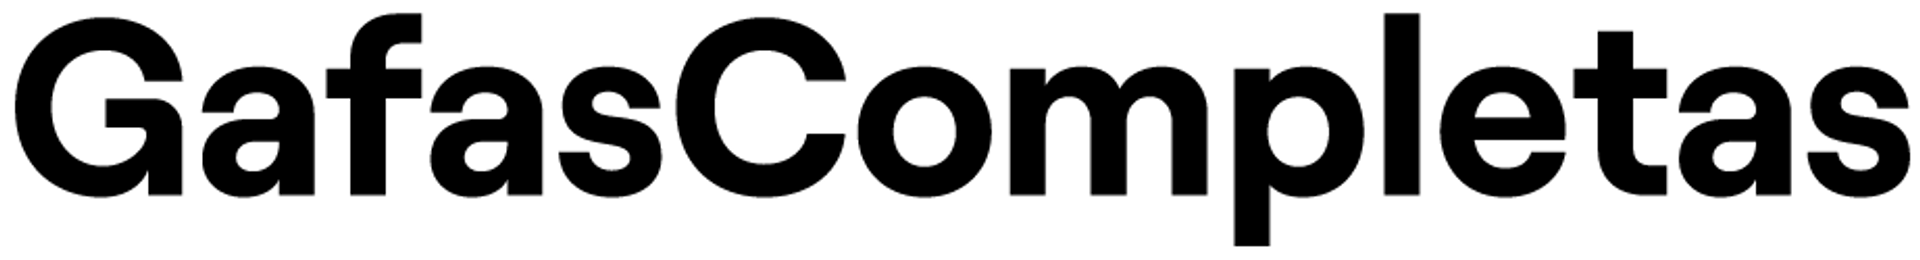 GAFAS COMPLETAS logo de catálogo